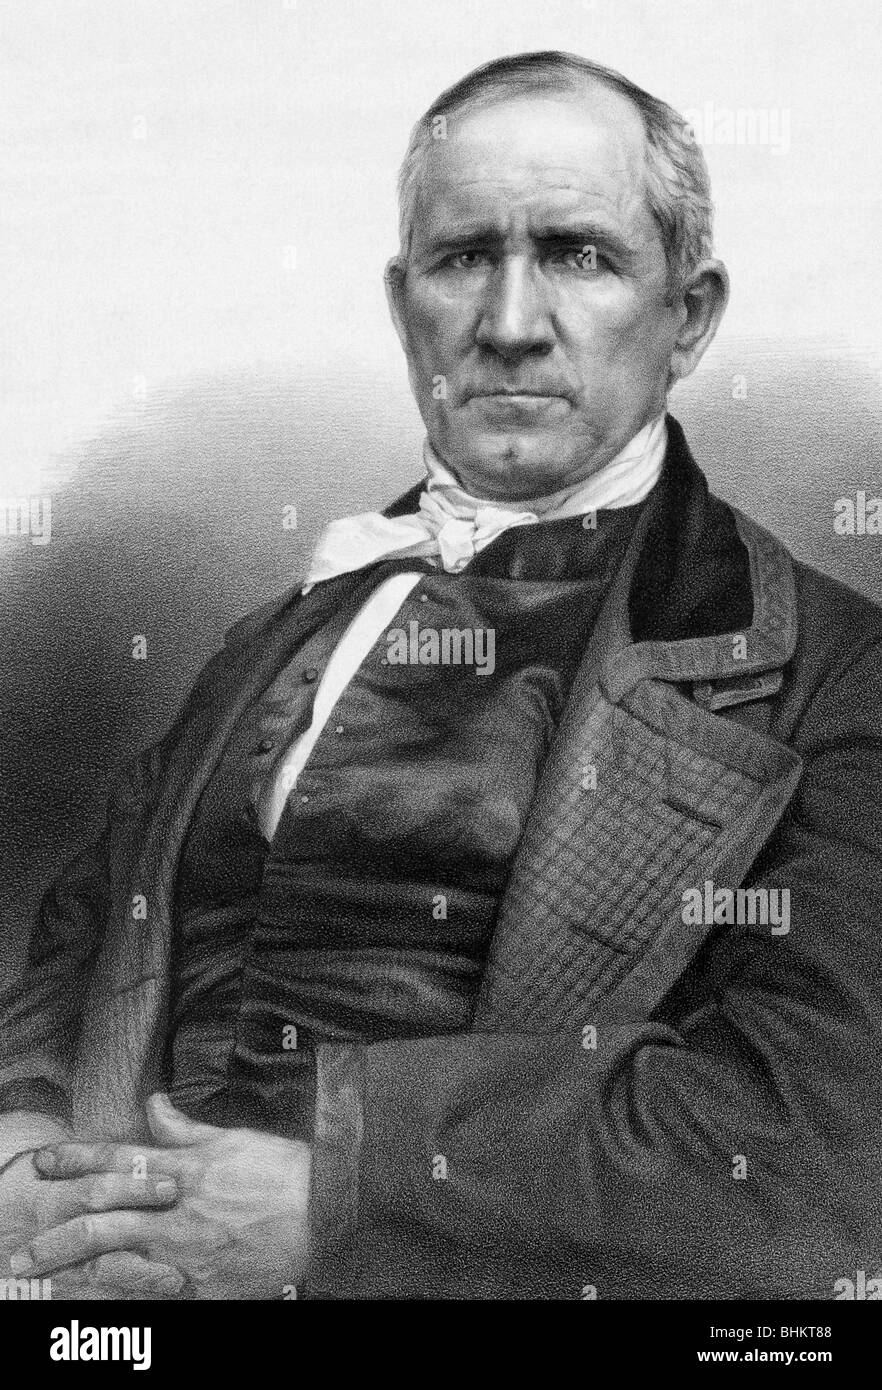 Porträt c1848 von Samuel Houston (1793-1863) - ein amerikanischer Staatsmann und Soldat, der ein Schlüssel war Figur in der Geschichte von Texas. Stockfoto